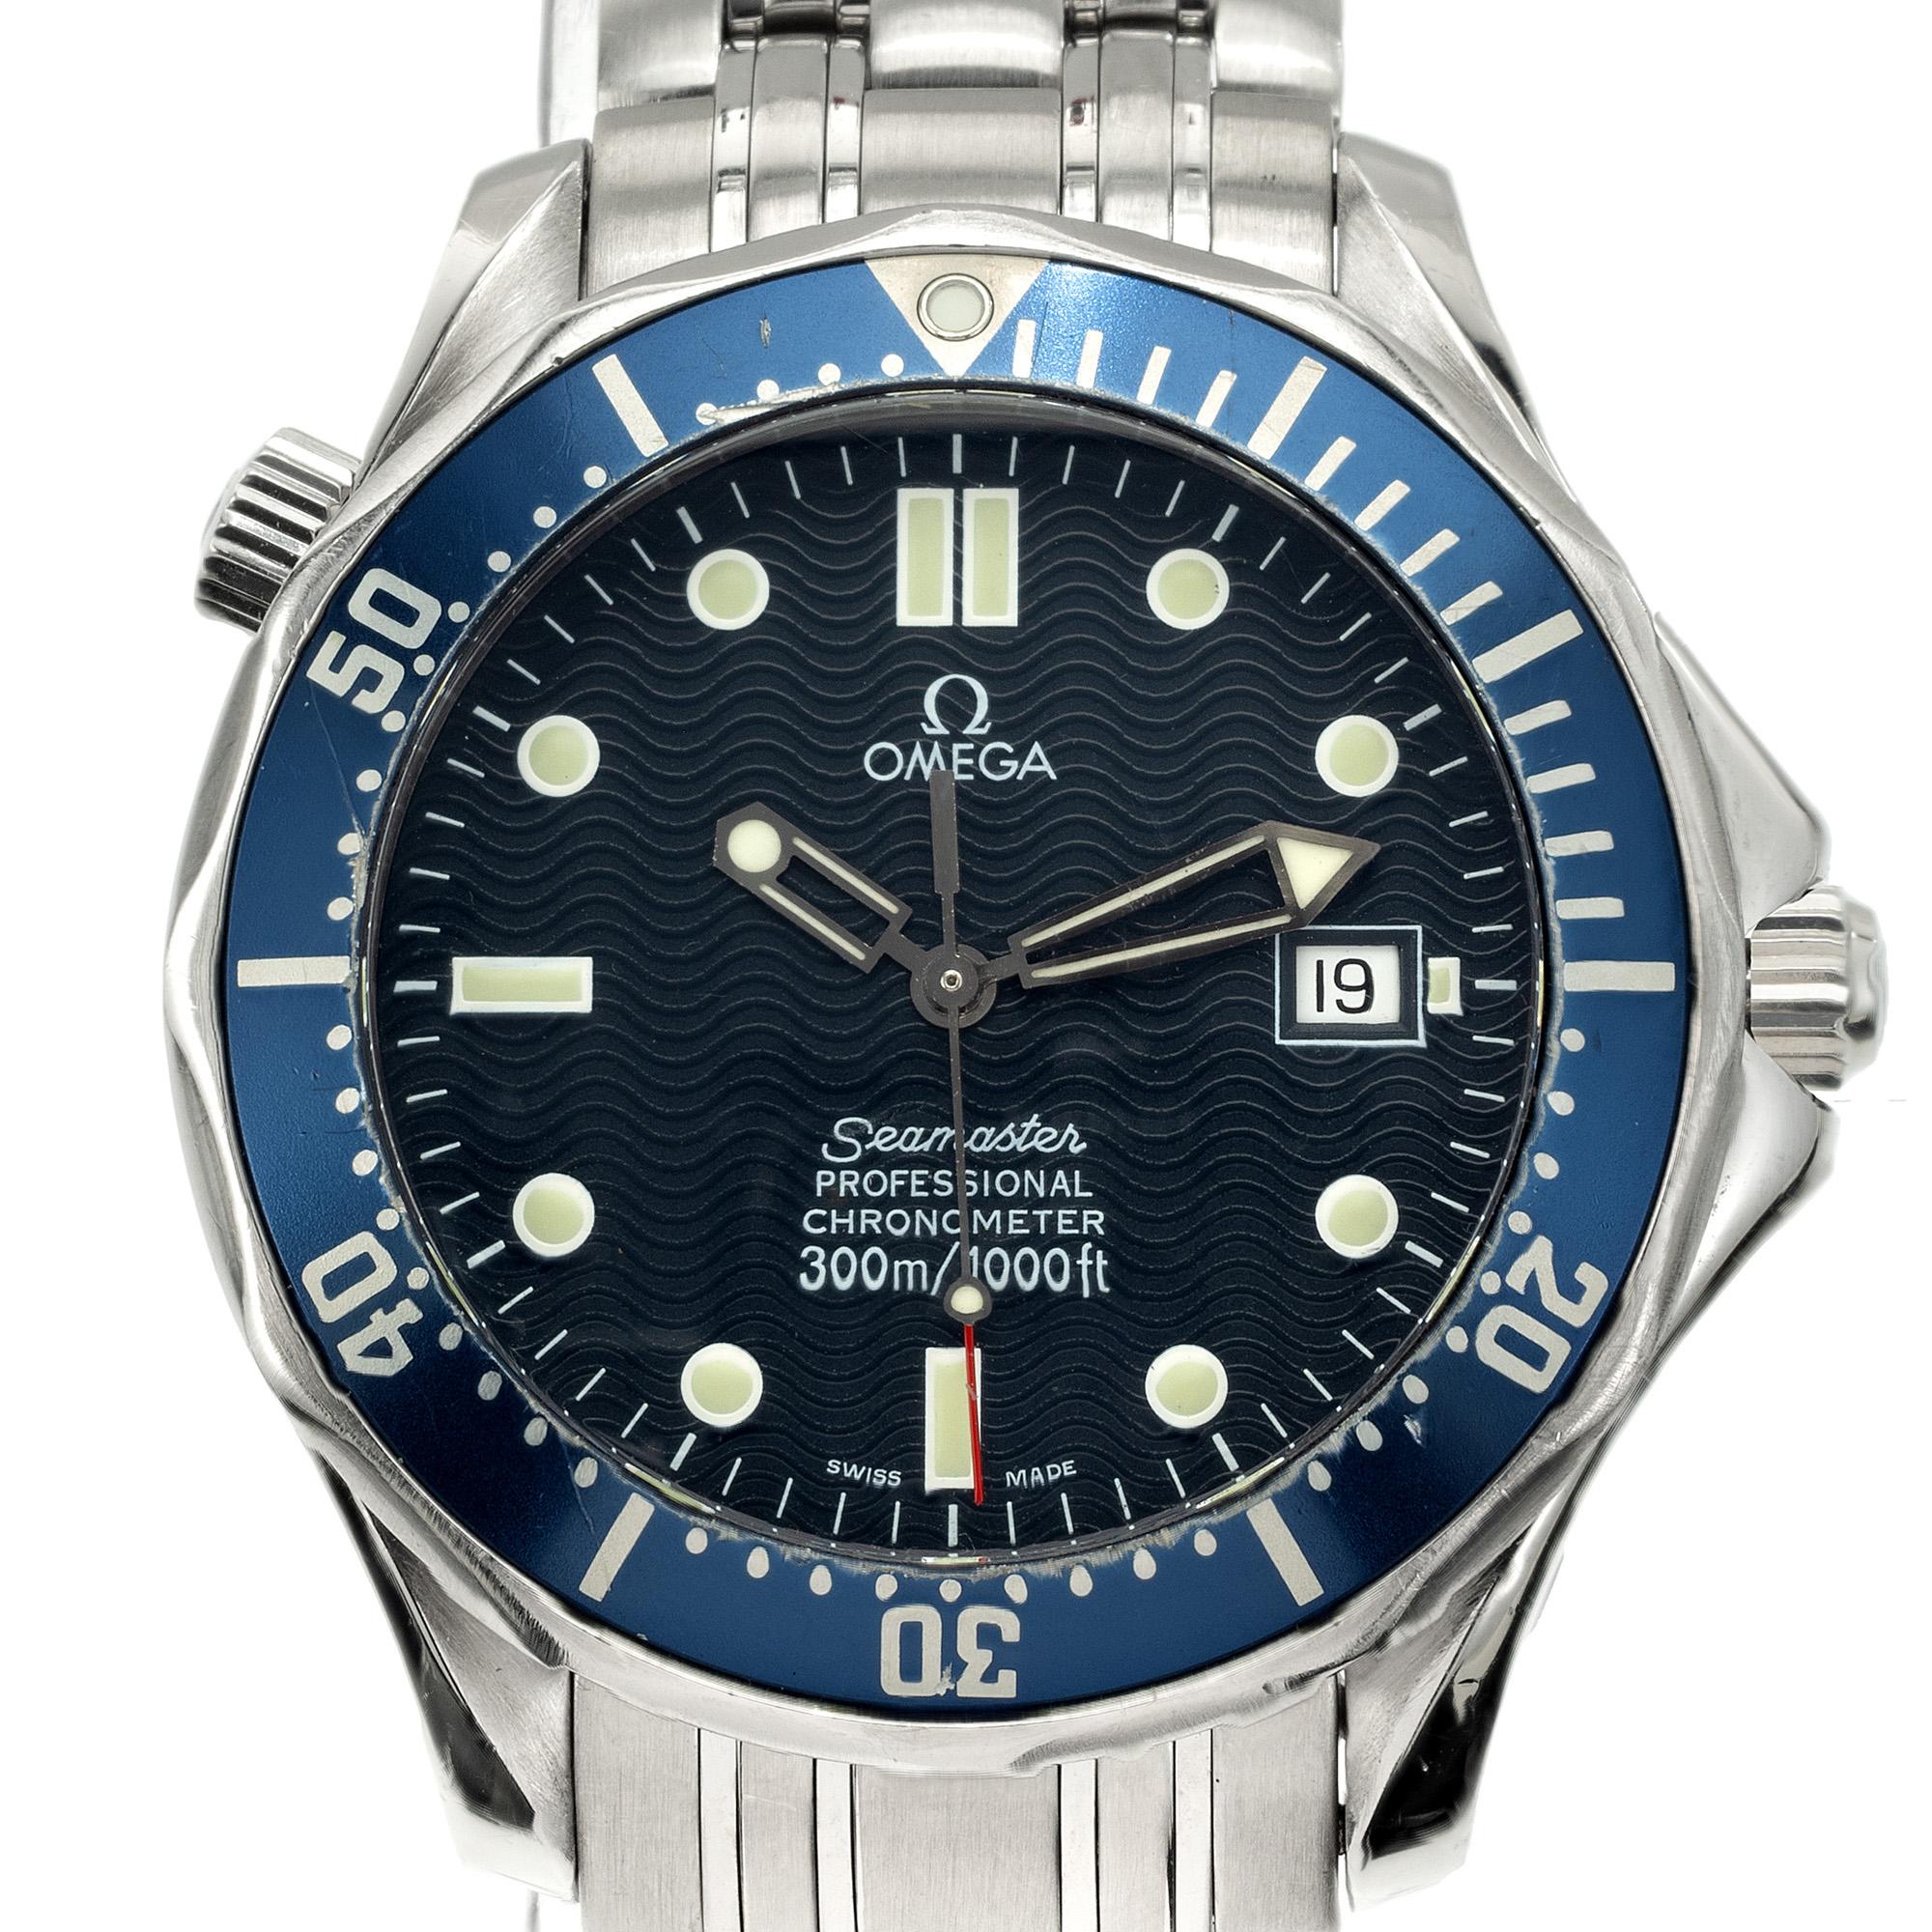 Die Omega Professional Automatic Seamaster Armbanduhr aus Edelstahl ist ein zeitloses Meisterwerk. Dieser elegante Zeitmesser verbindet nahtlos Stil mit Funktionalität. Die Edelstahlkonstruktion mit rundem Zifferblatt und blauer Zierleiste.

Länge: